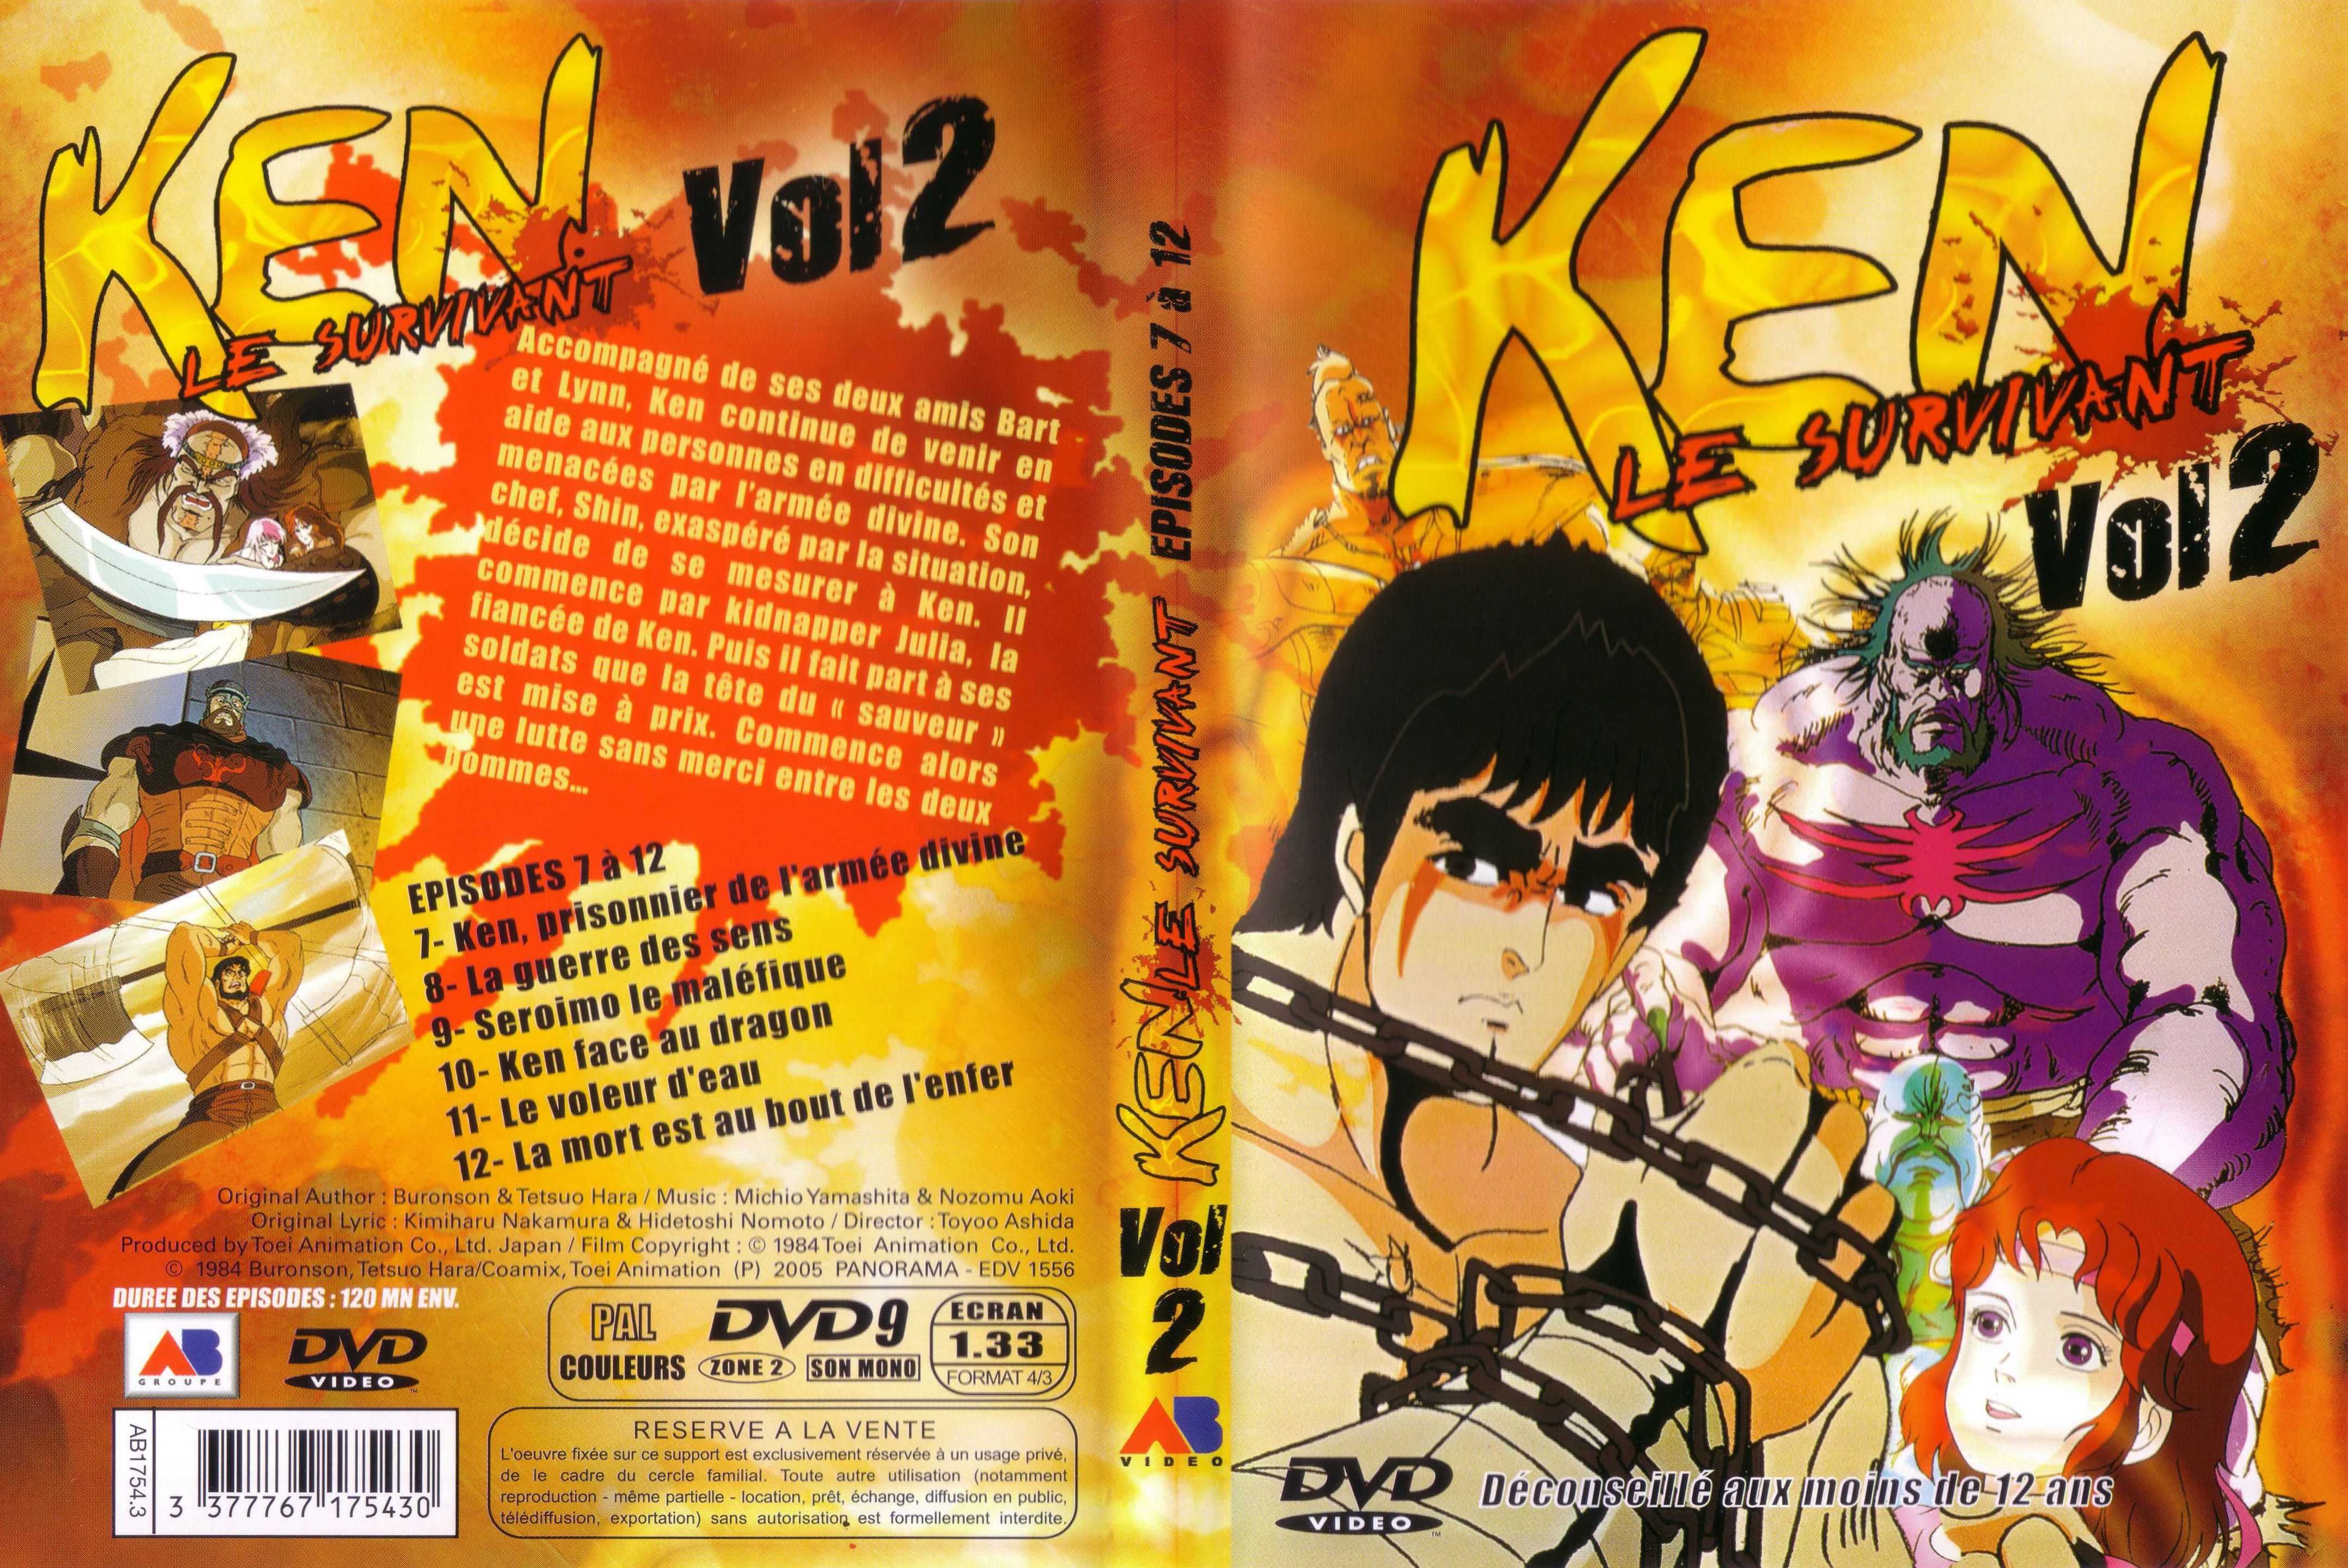 Jaquette DVD Ken le survivant vol 2